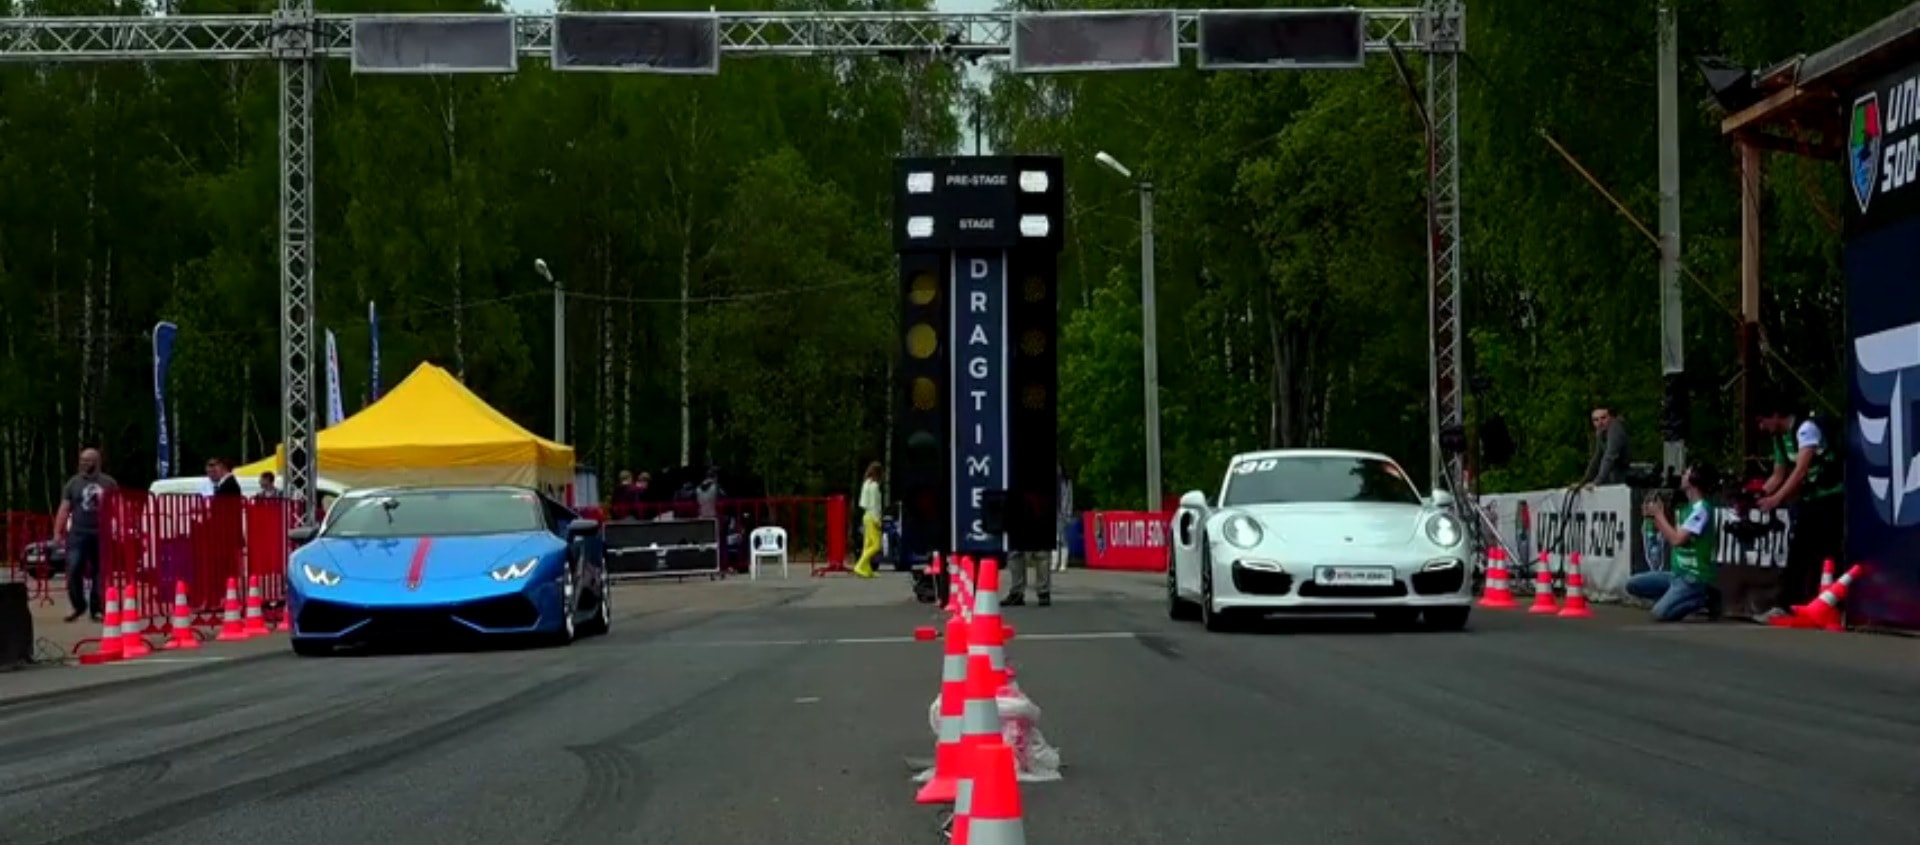 Lamborghini Huracan vs 911 Turbo S Drag Race Proves ...